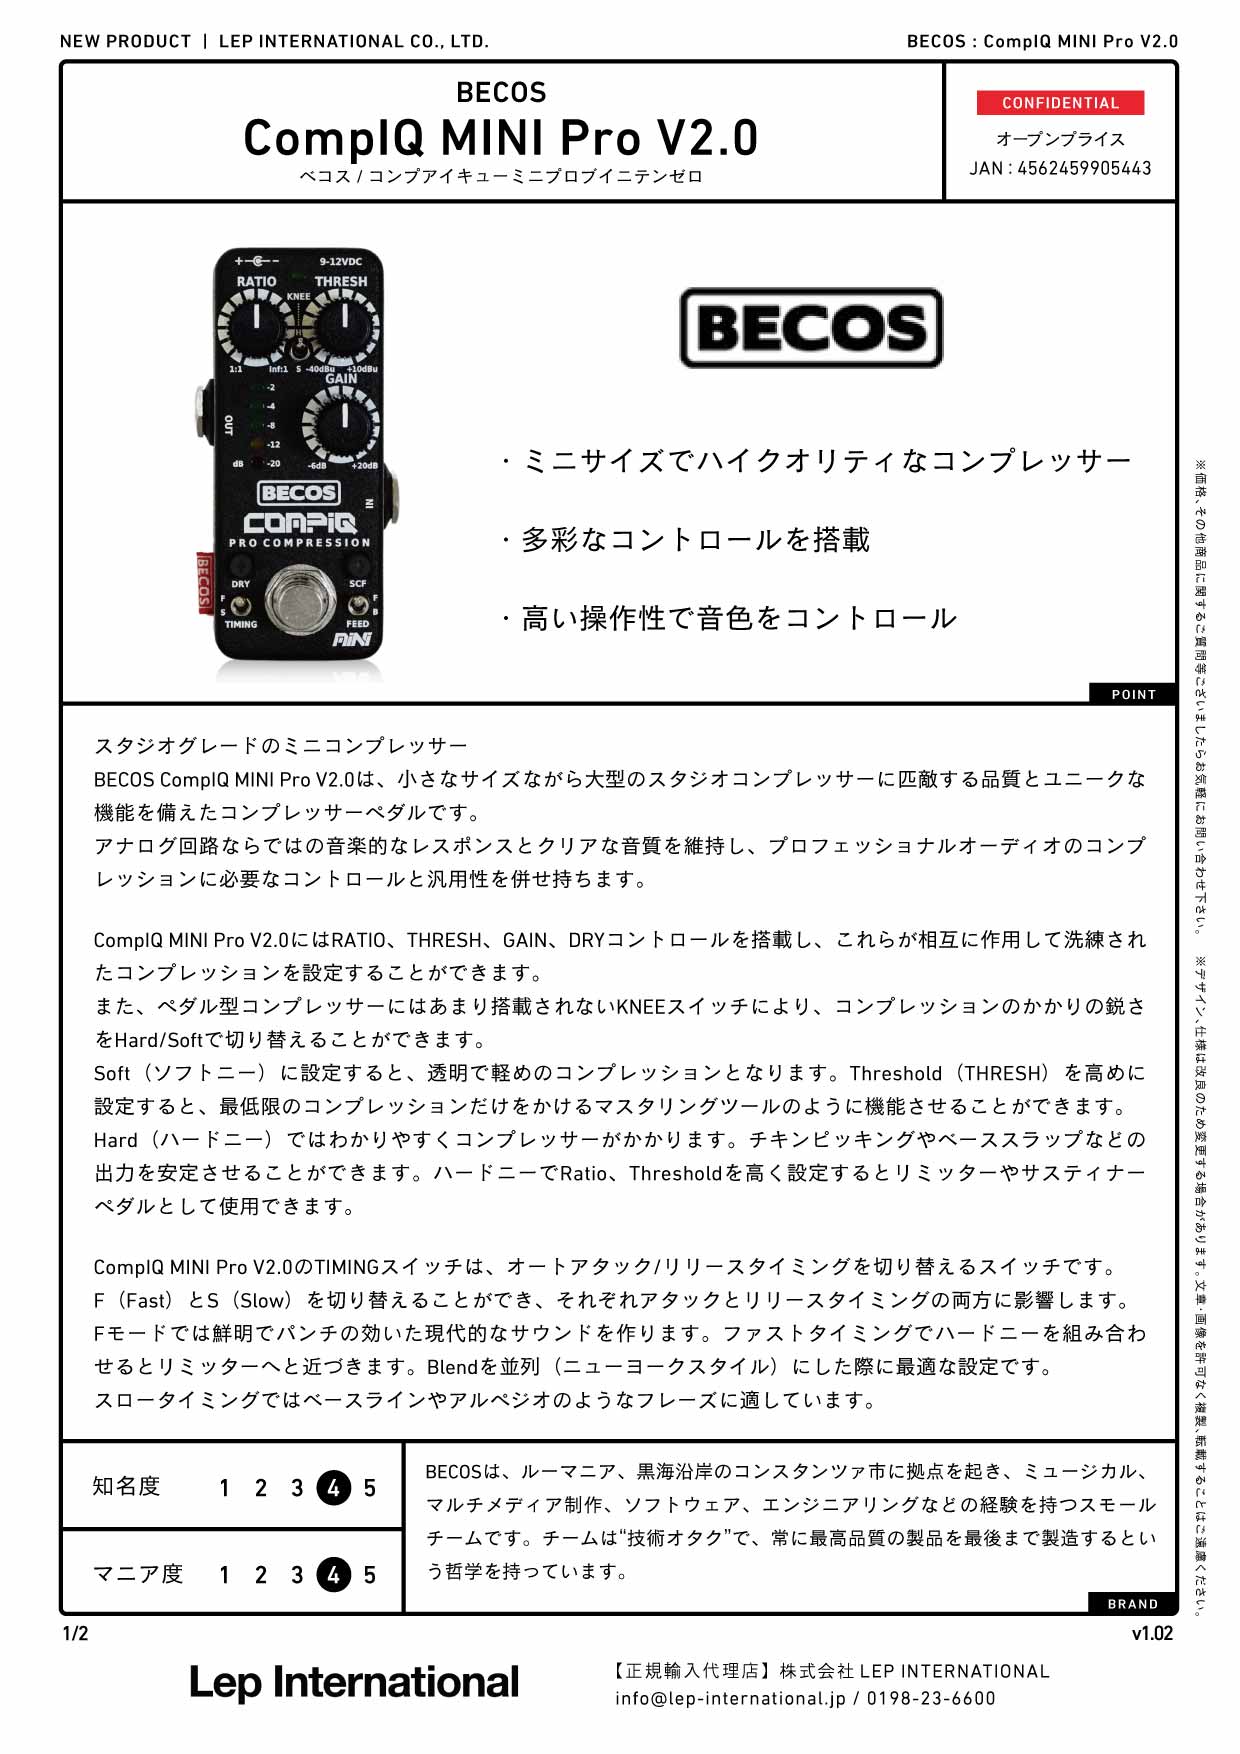 BECOS / CompIQ MINI Pro V2.0